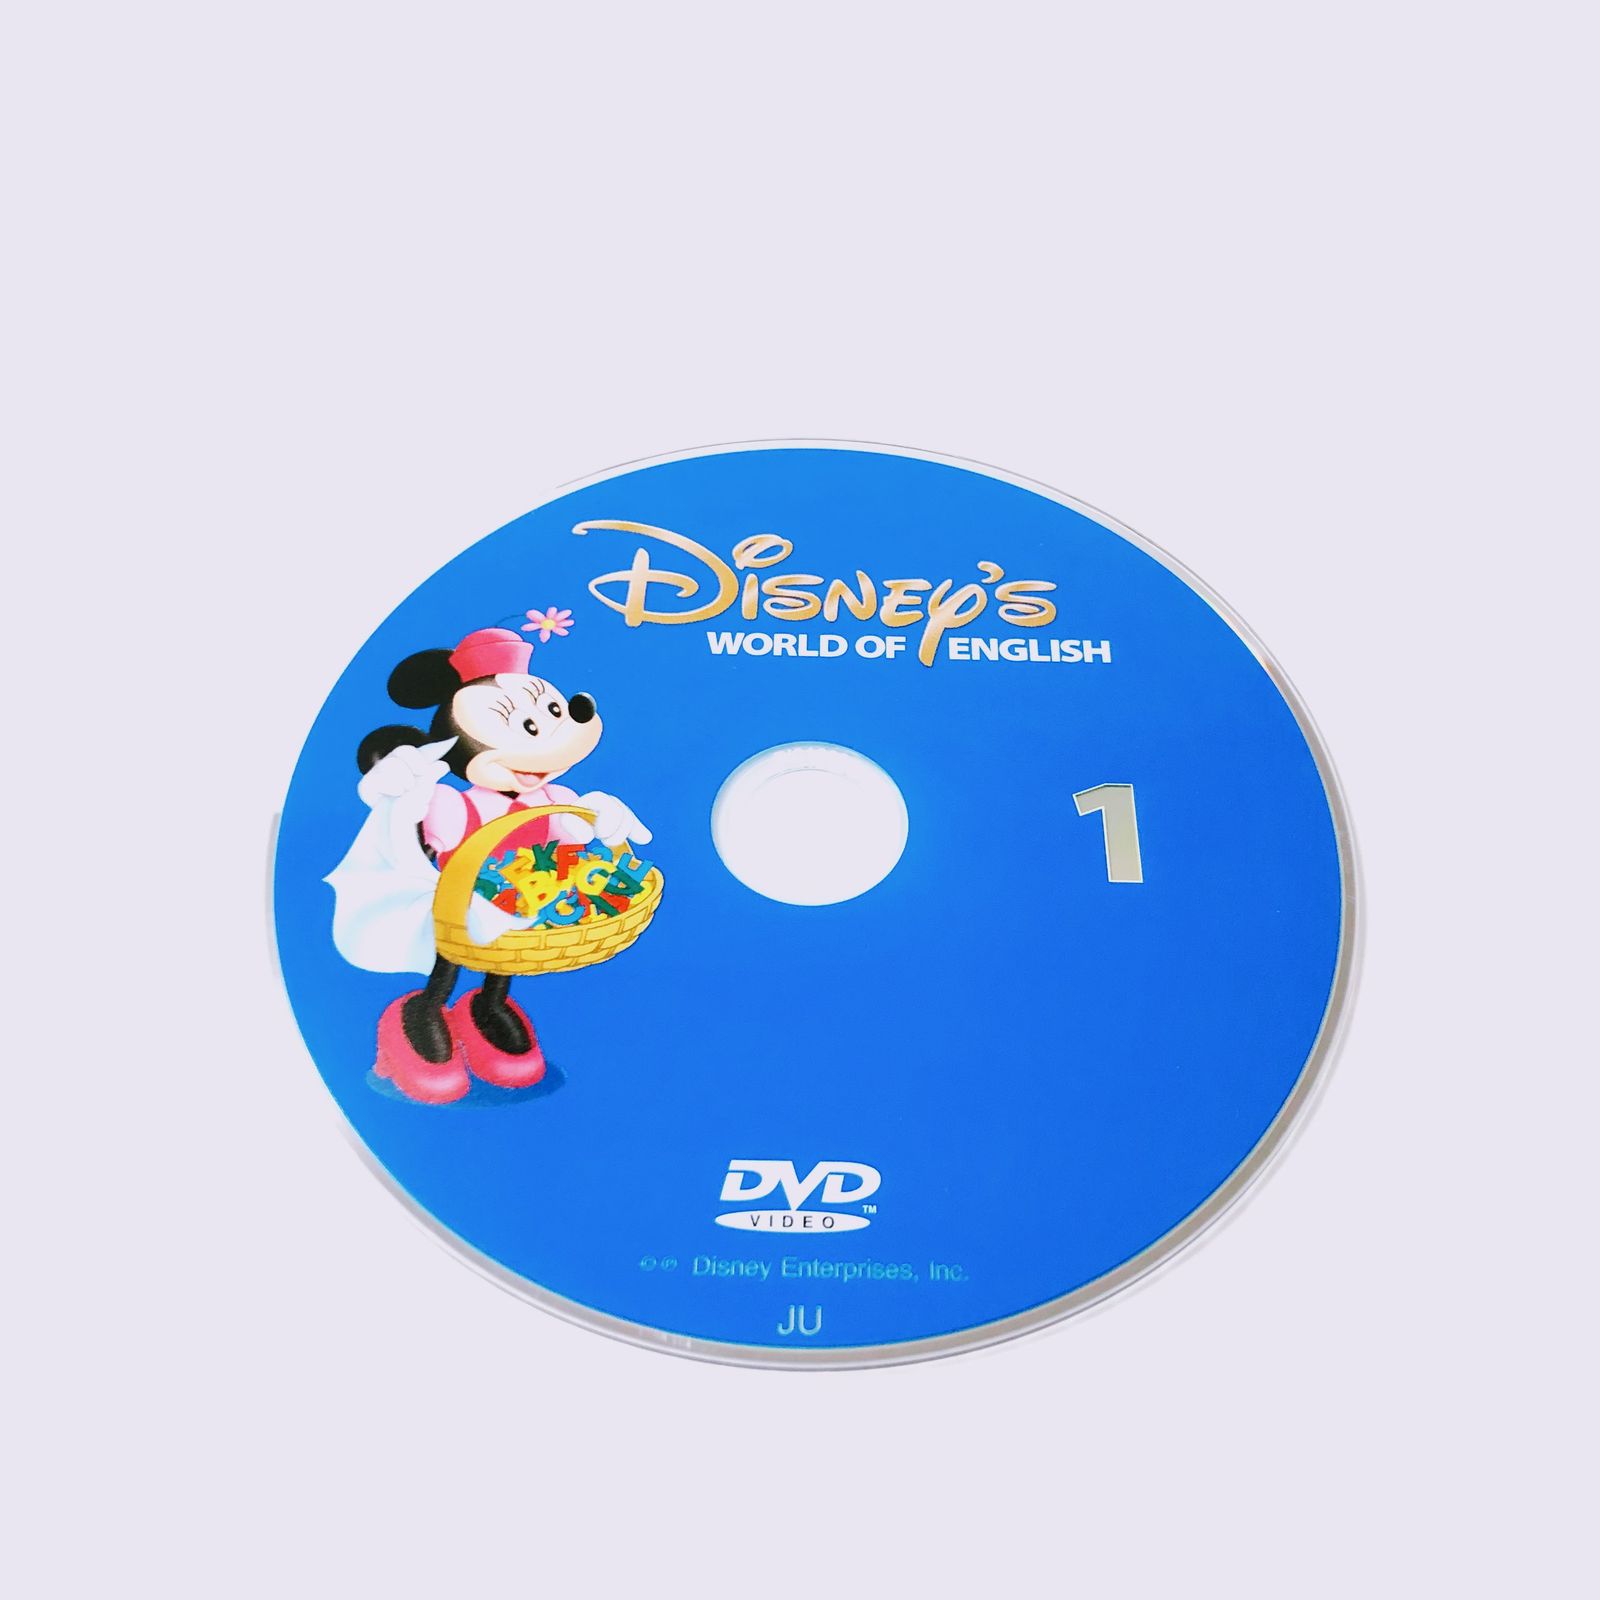 ディズニー英語システム ストレートプレイ DVD 旧子役 字幕有 2009年 d-352